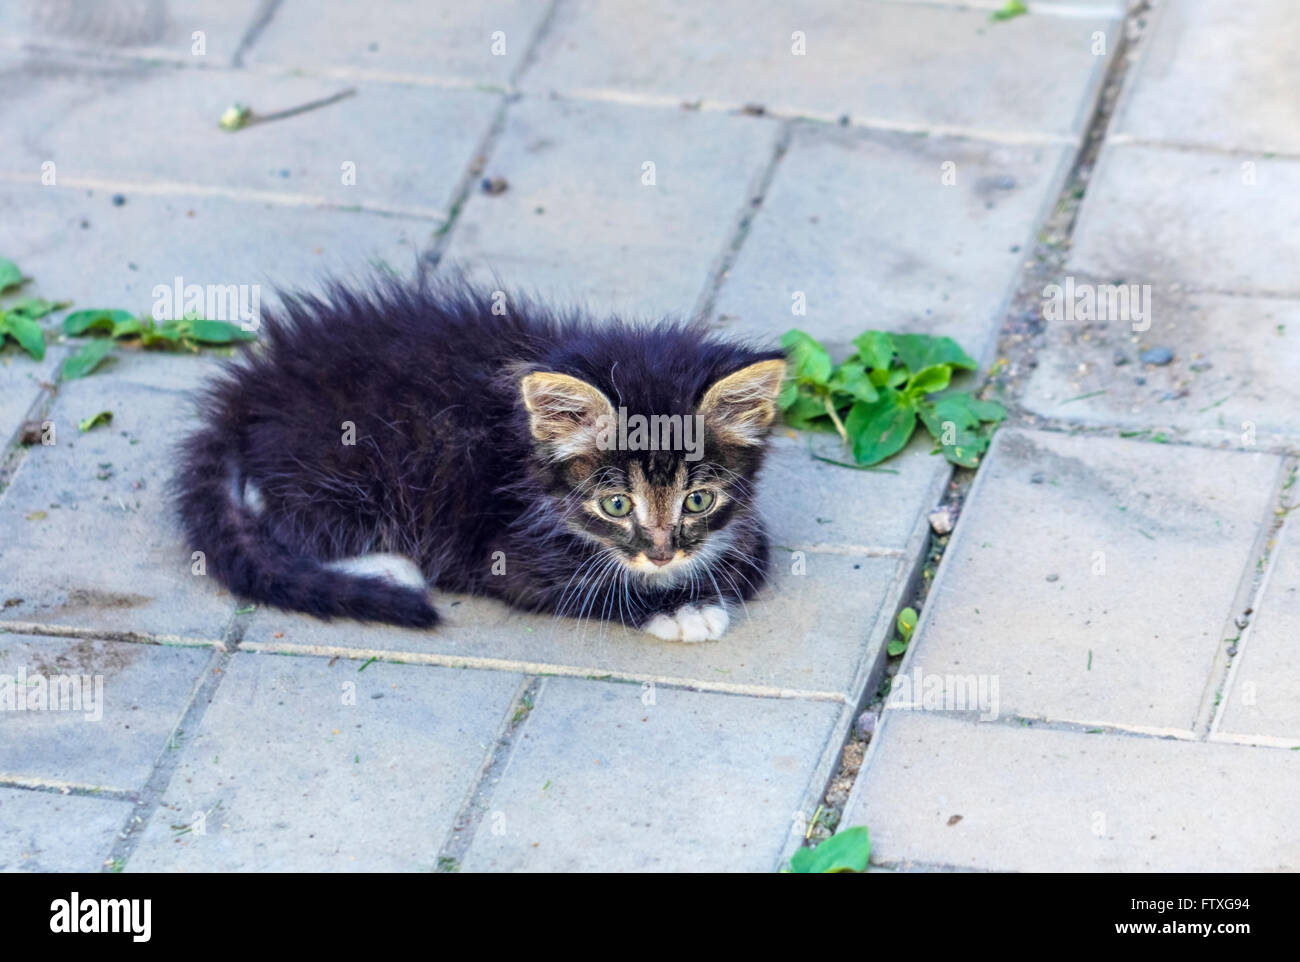 Nice kitten on stones of garden path Stock Photo